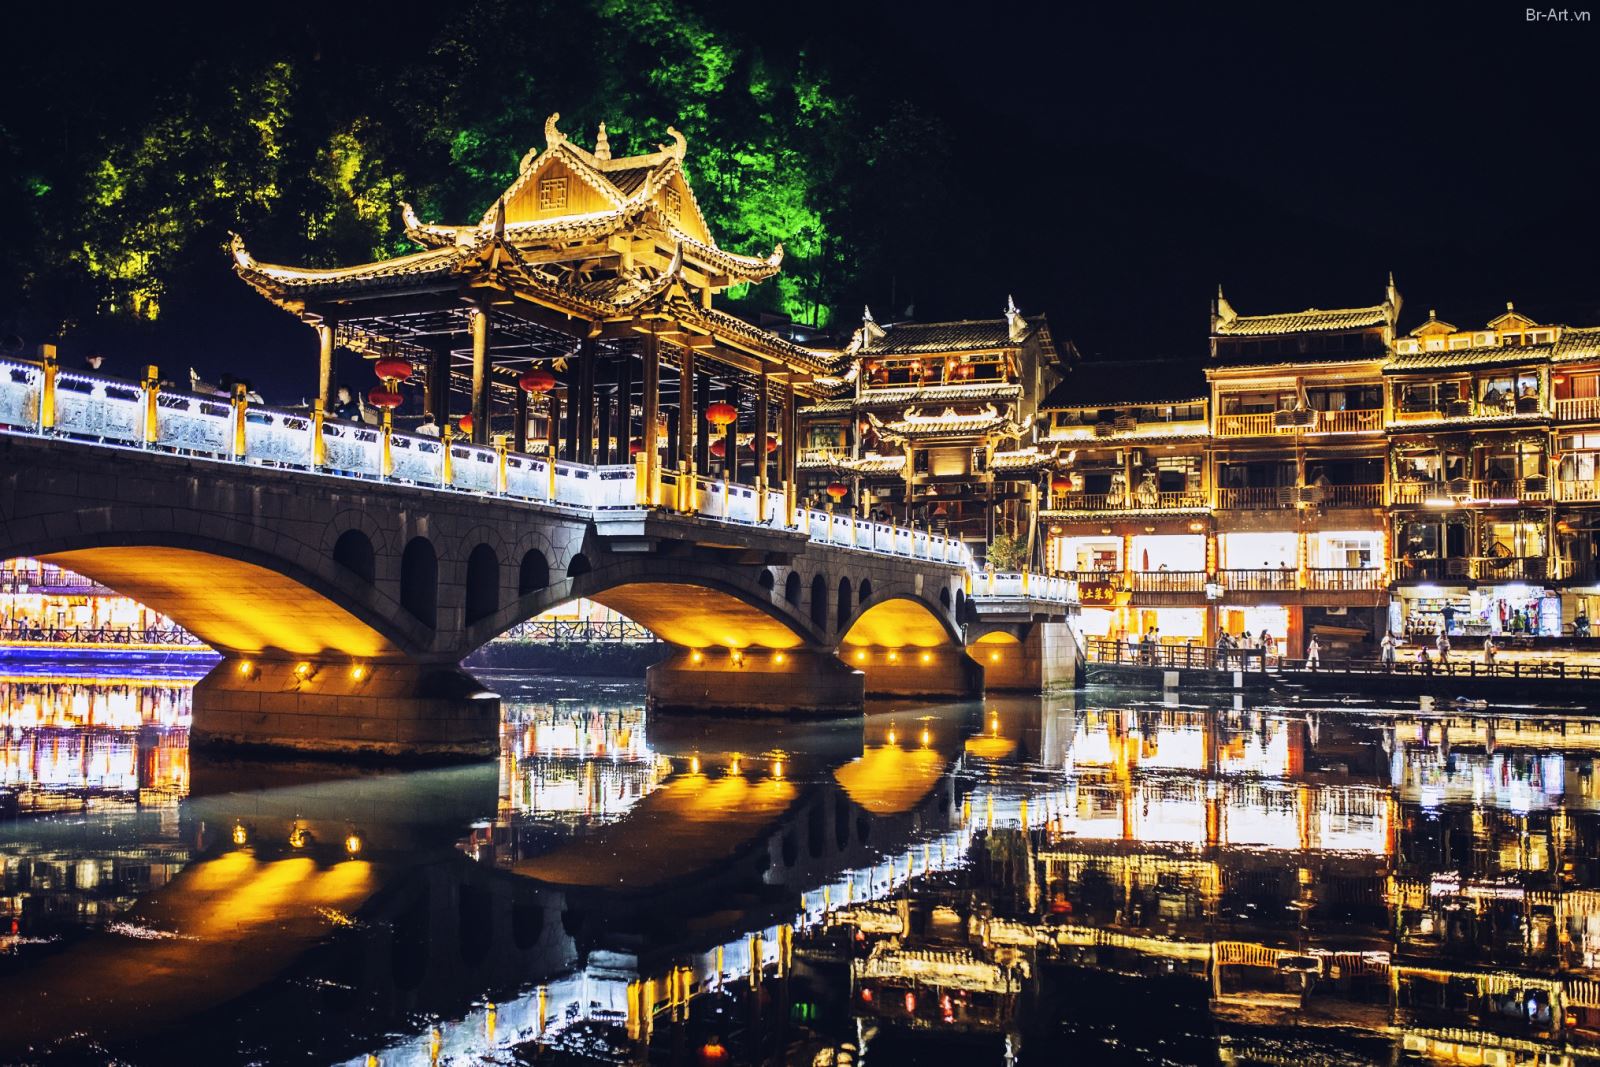 Cầu Hồng Kiều về đêm được tô điểm bằng những ánh đèn rực rỡ